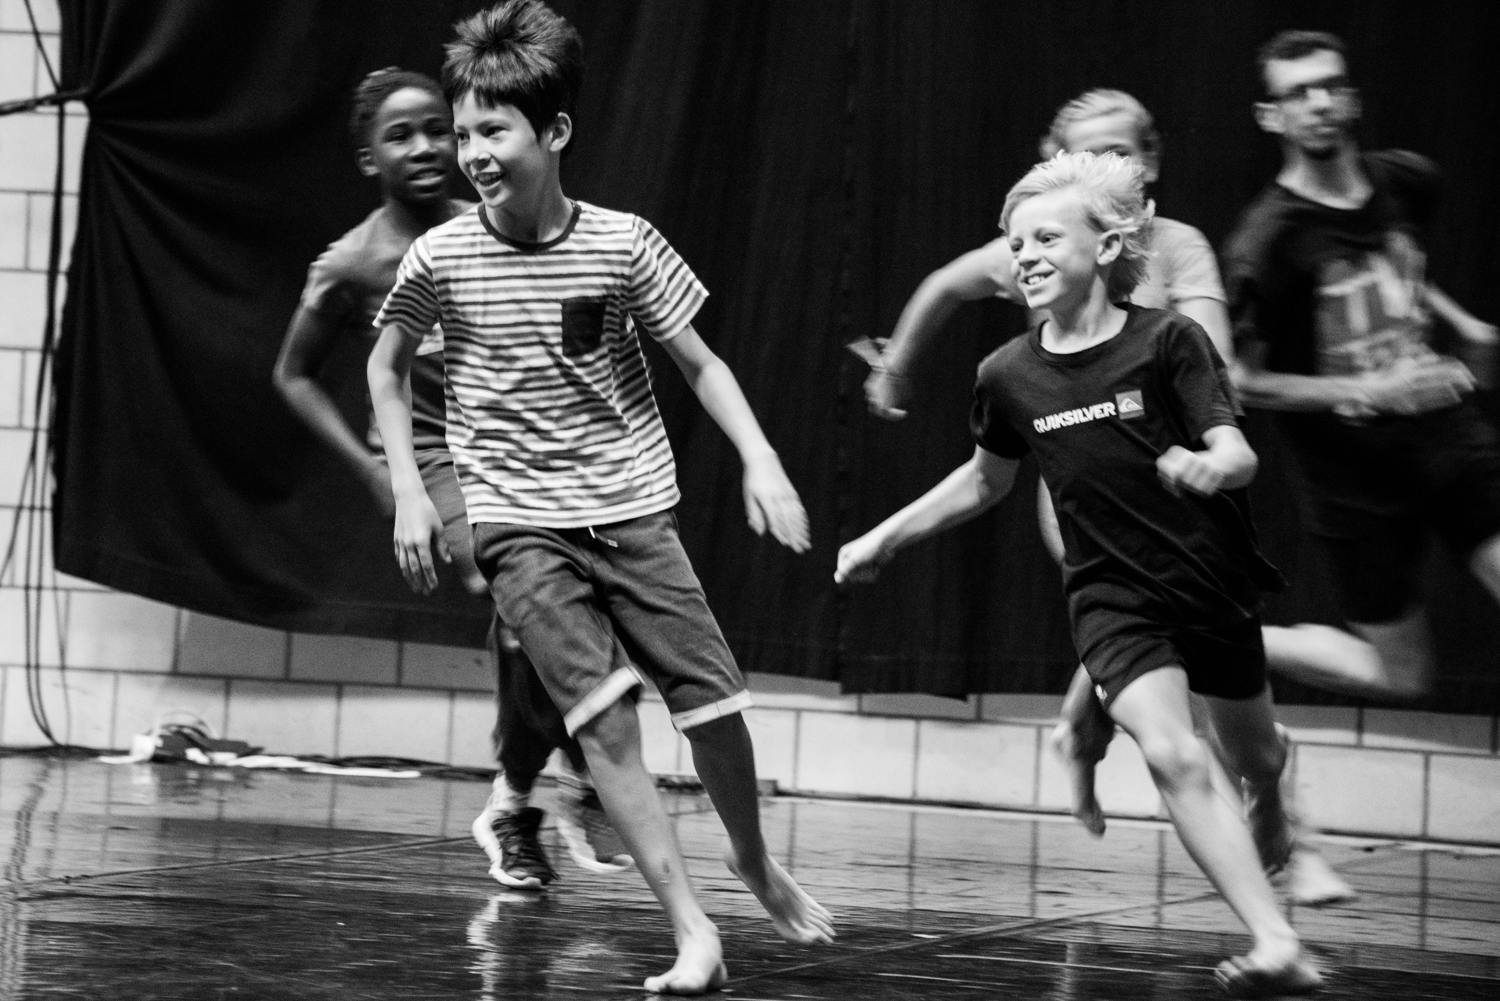 KUNSTENDAG VOOR KINDEREN: Kom proeven van hedendaagse dans / Seppe Baeyens @Ultima Vez Studios (families met kinderen)